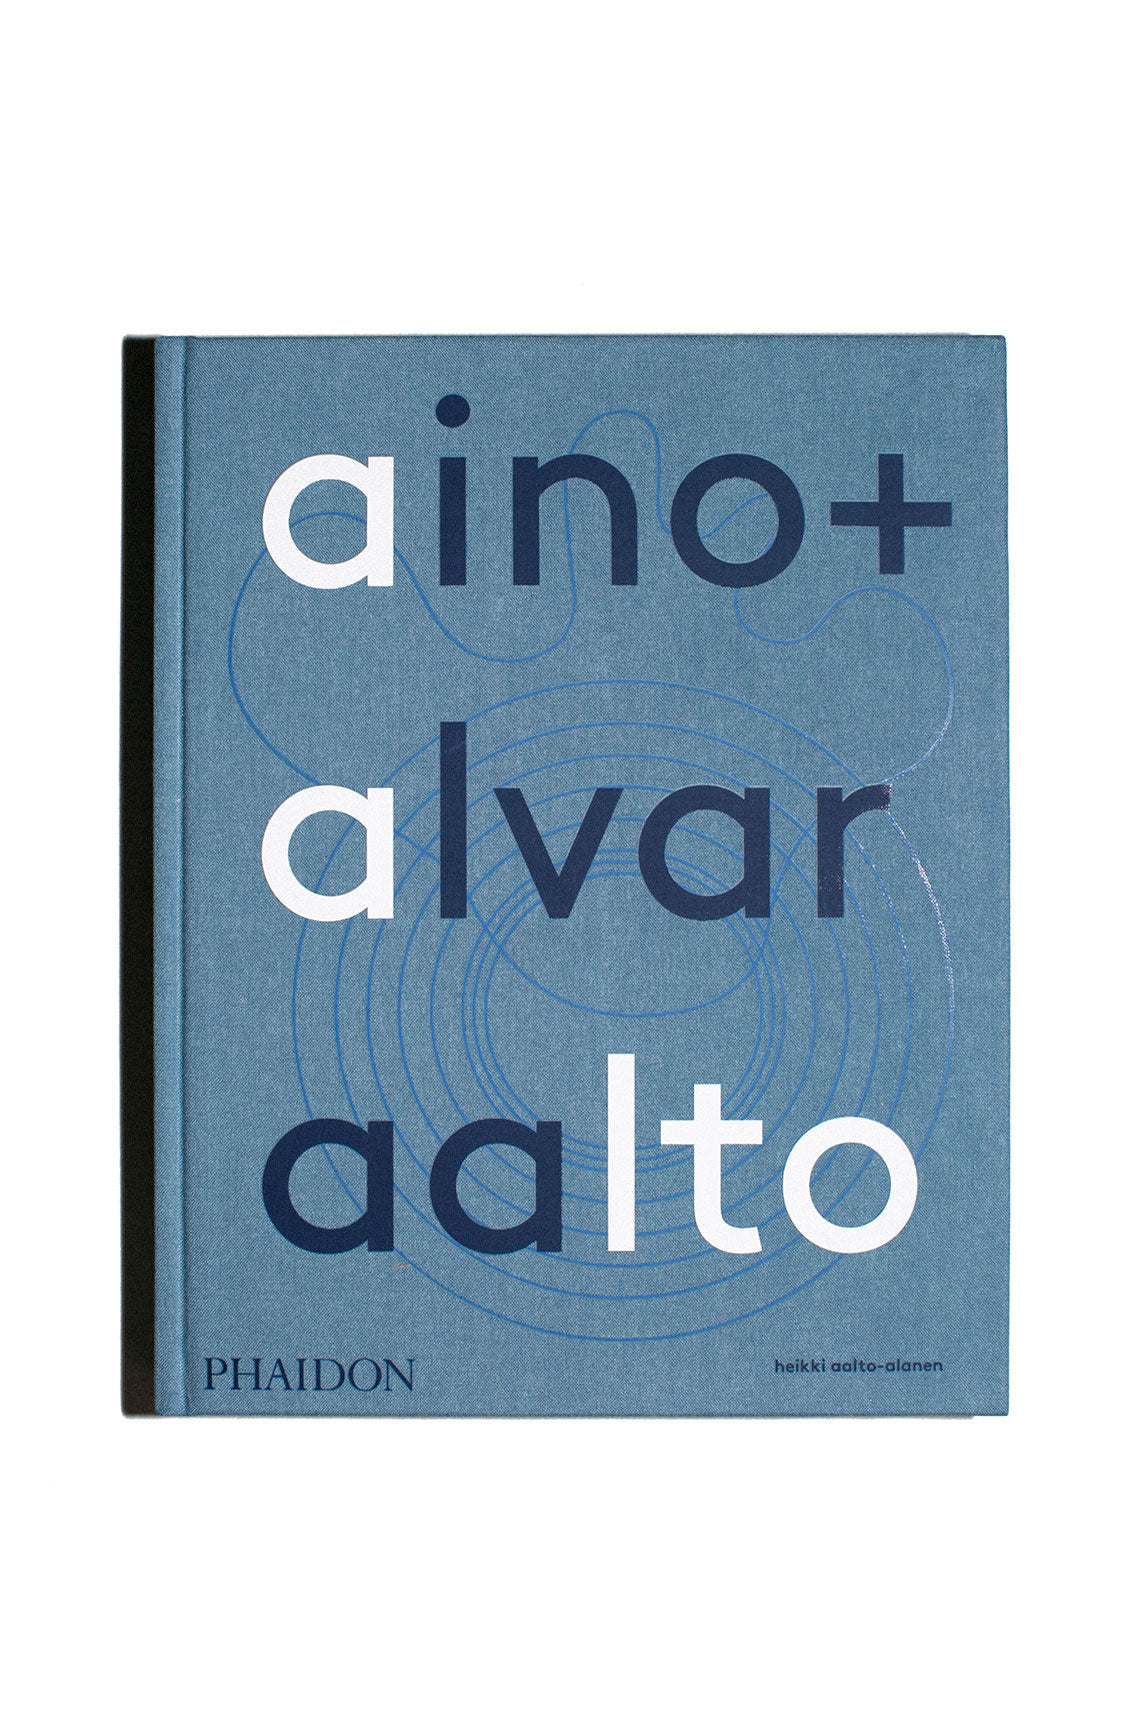 Aino + Alvar Aalto